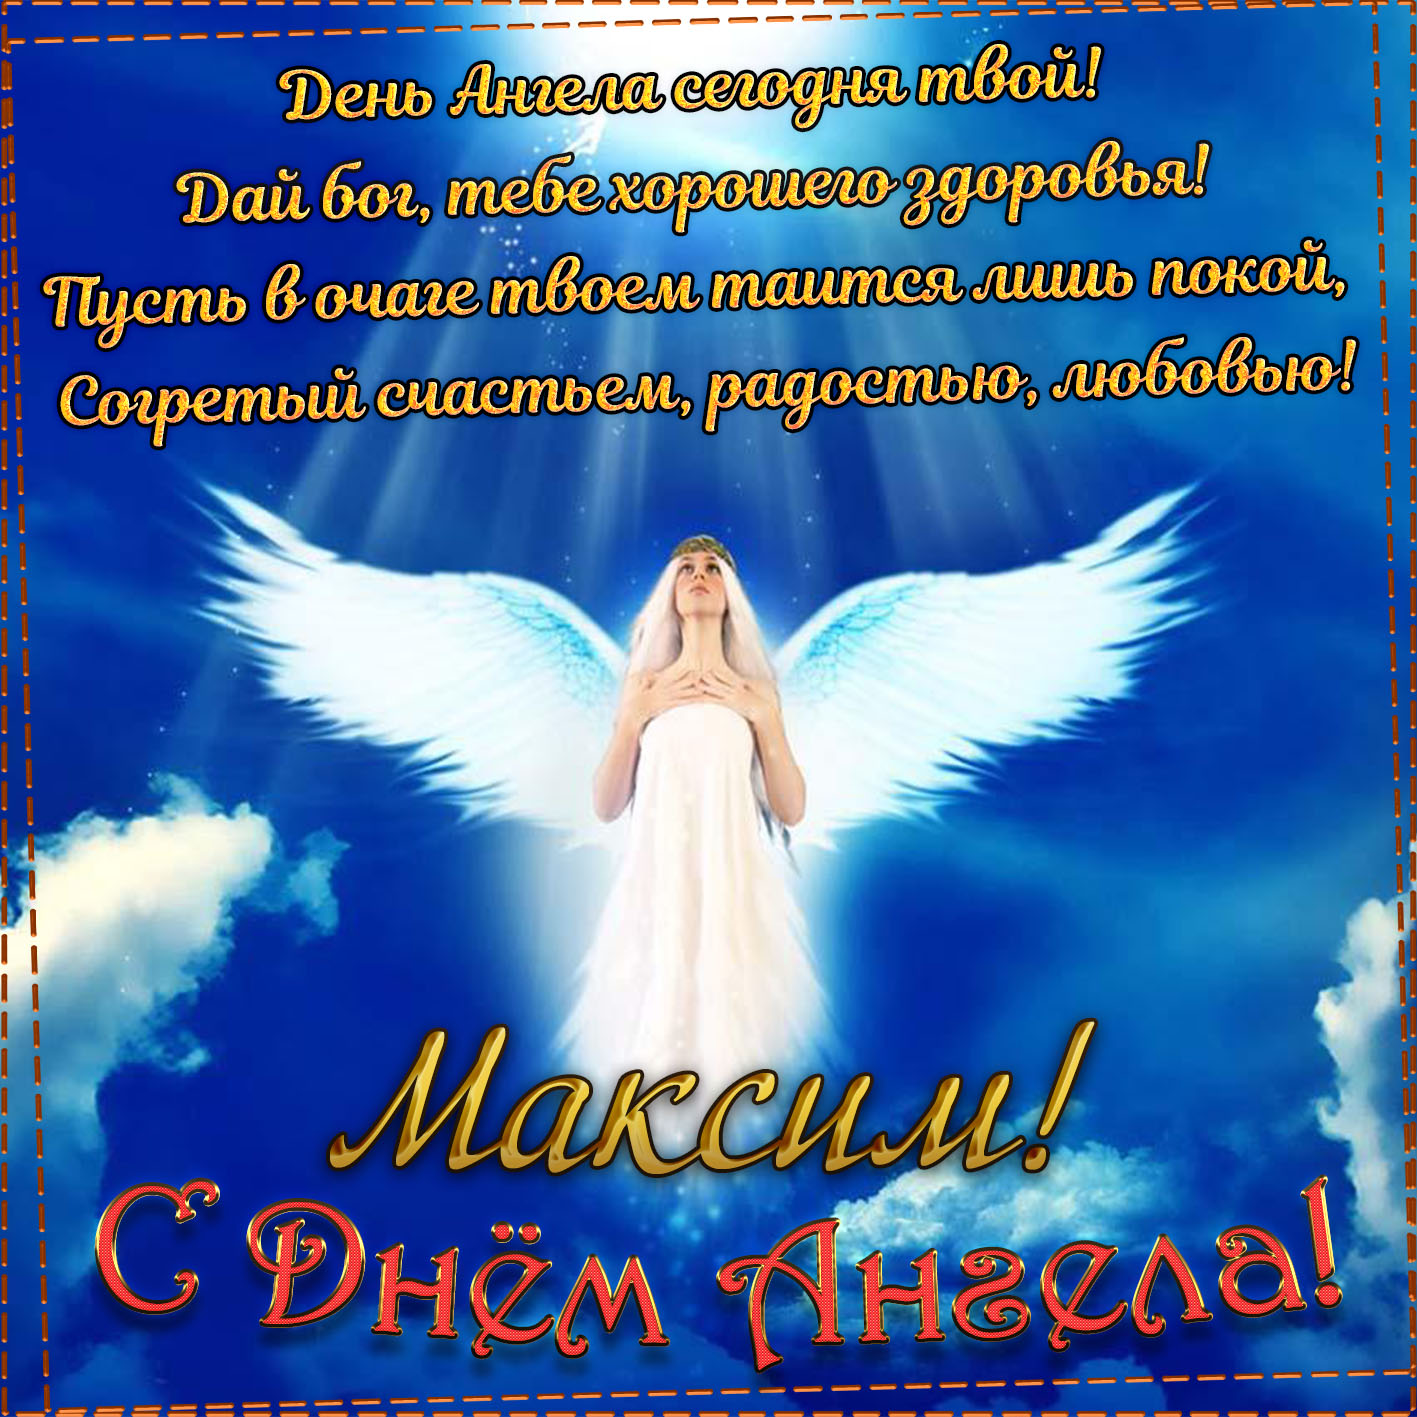 Открытка - пожелание на День Ангела Максиму на фоне неба